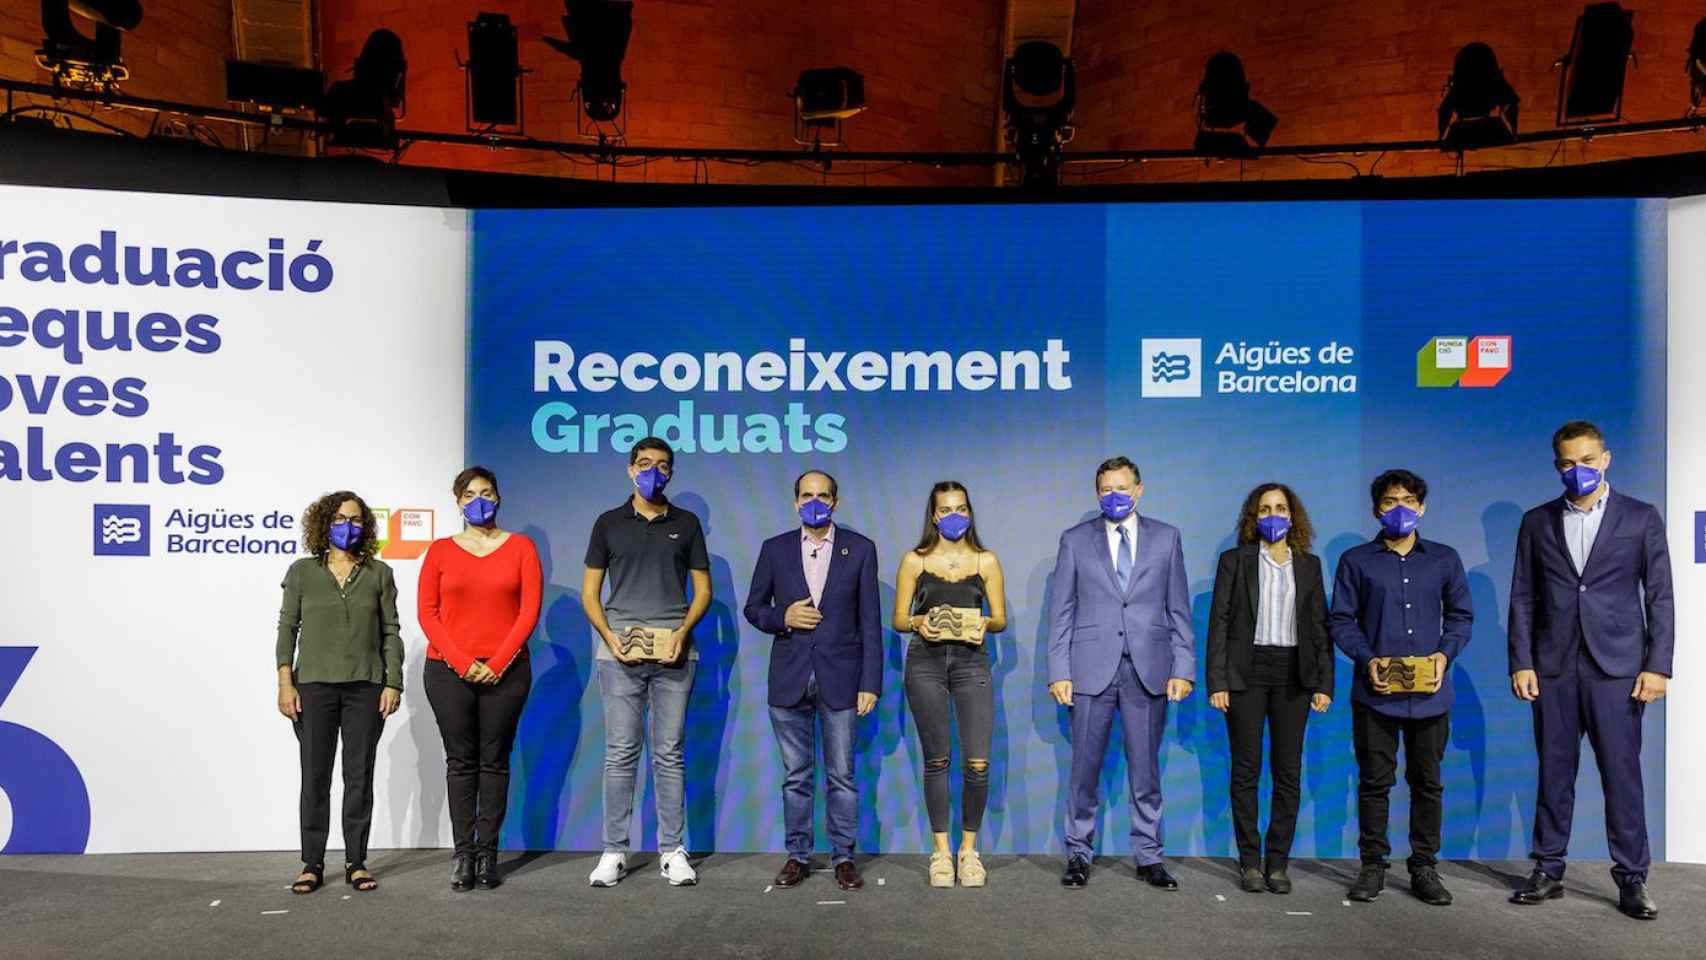 Graduados los primeros universitarios del programa Beques Joves Talents / AIGÜES DE BARCELONA